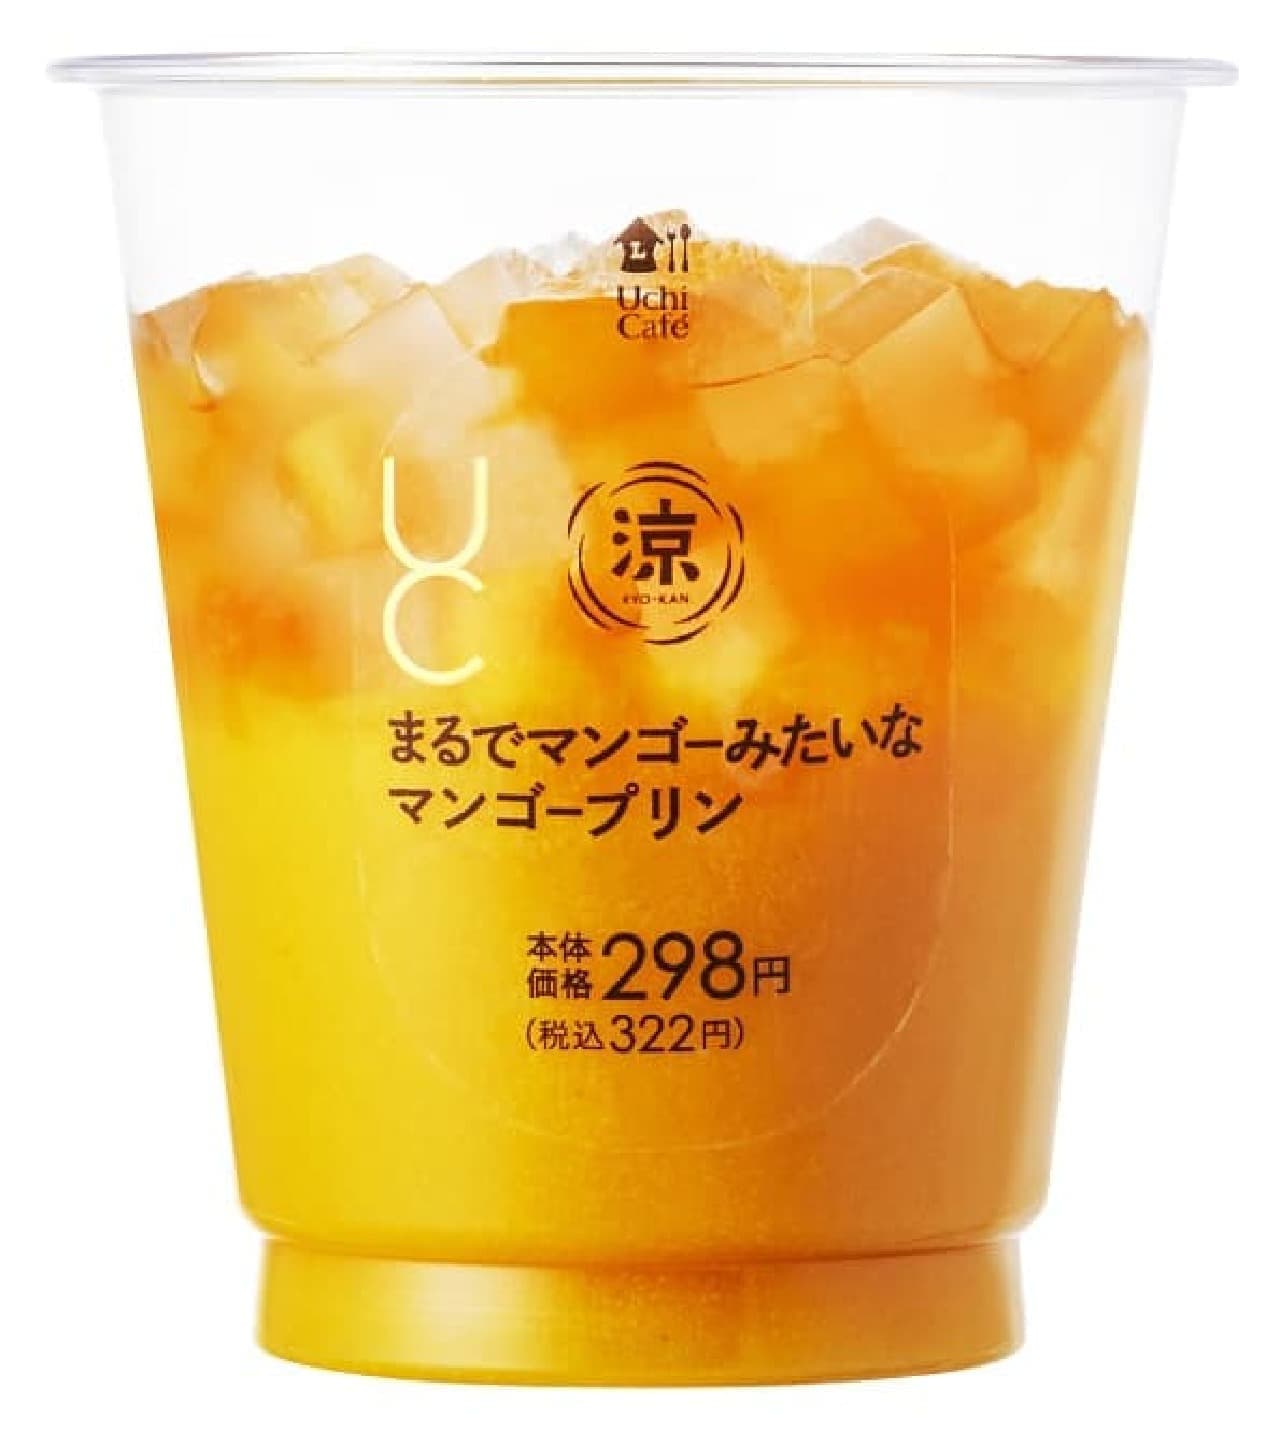 Lawson "Uchi Cafe: Mango Pudding Like a Mango"